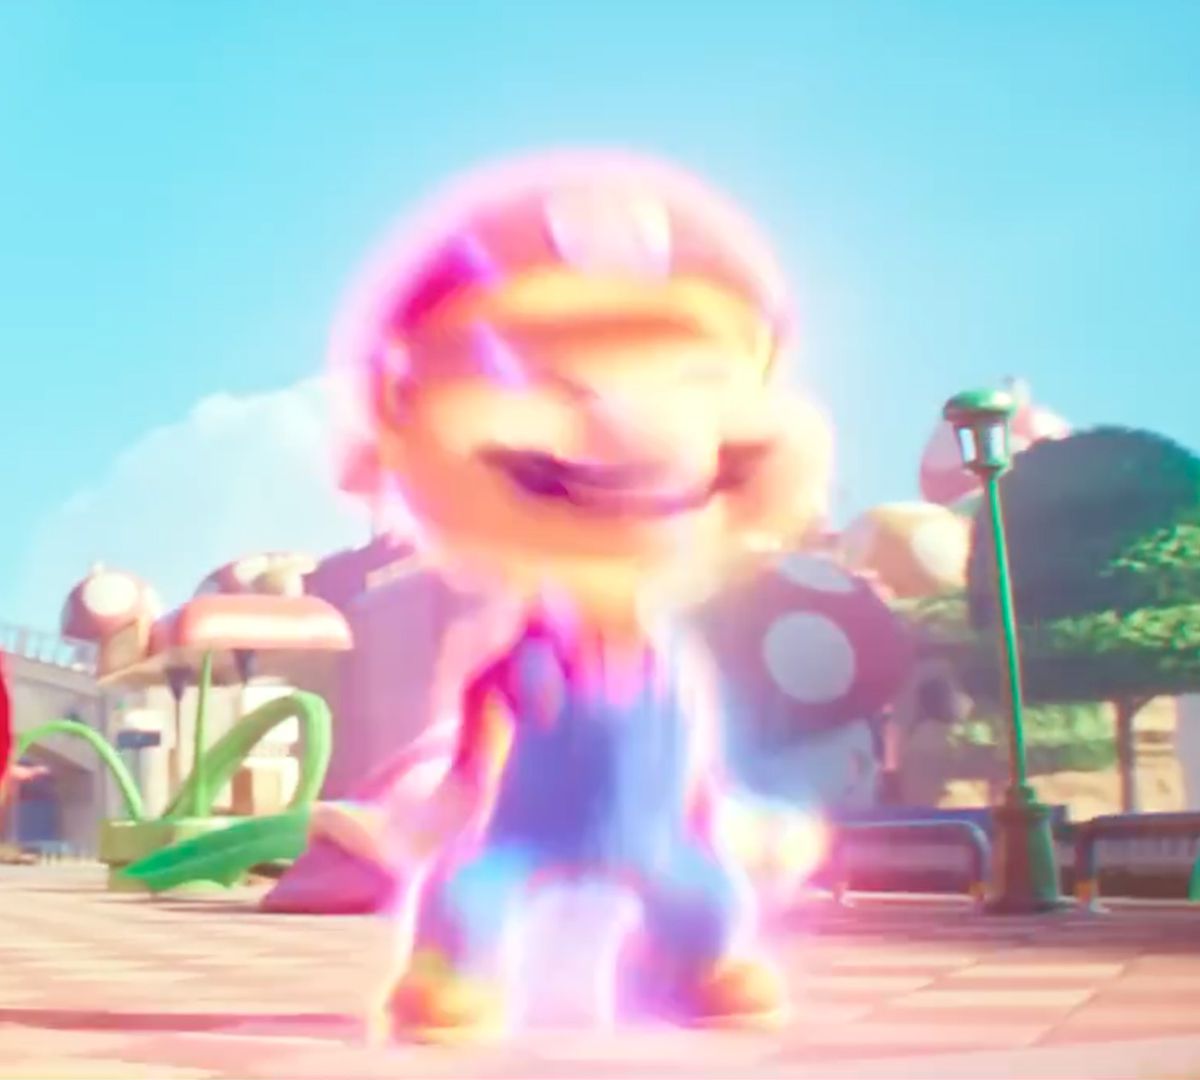 Mario se transforme en sa plus grande forme après avoir mangé un super champignon dans une image du film The Super Mario Bros.